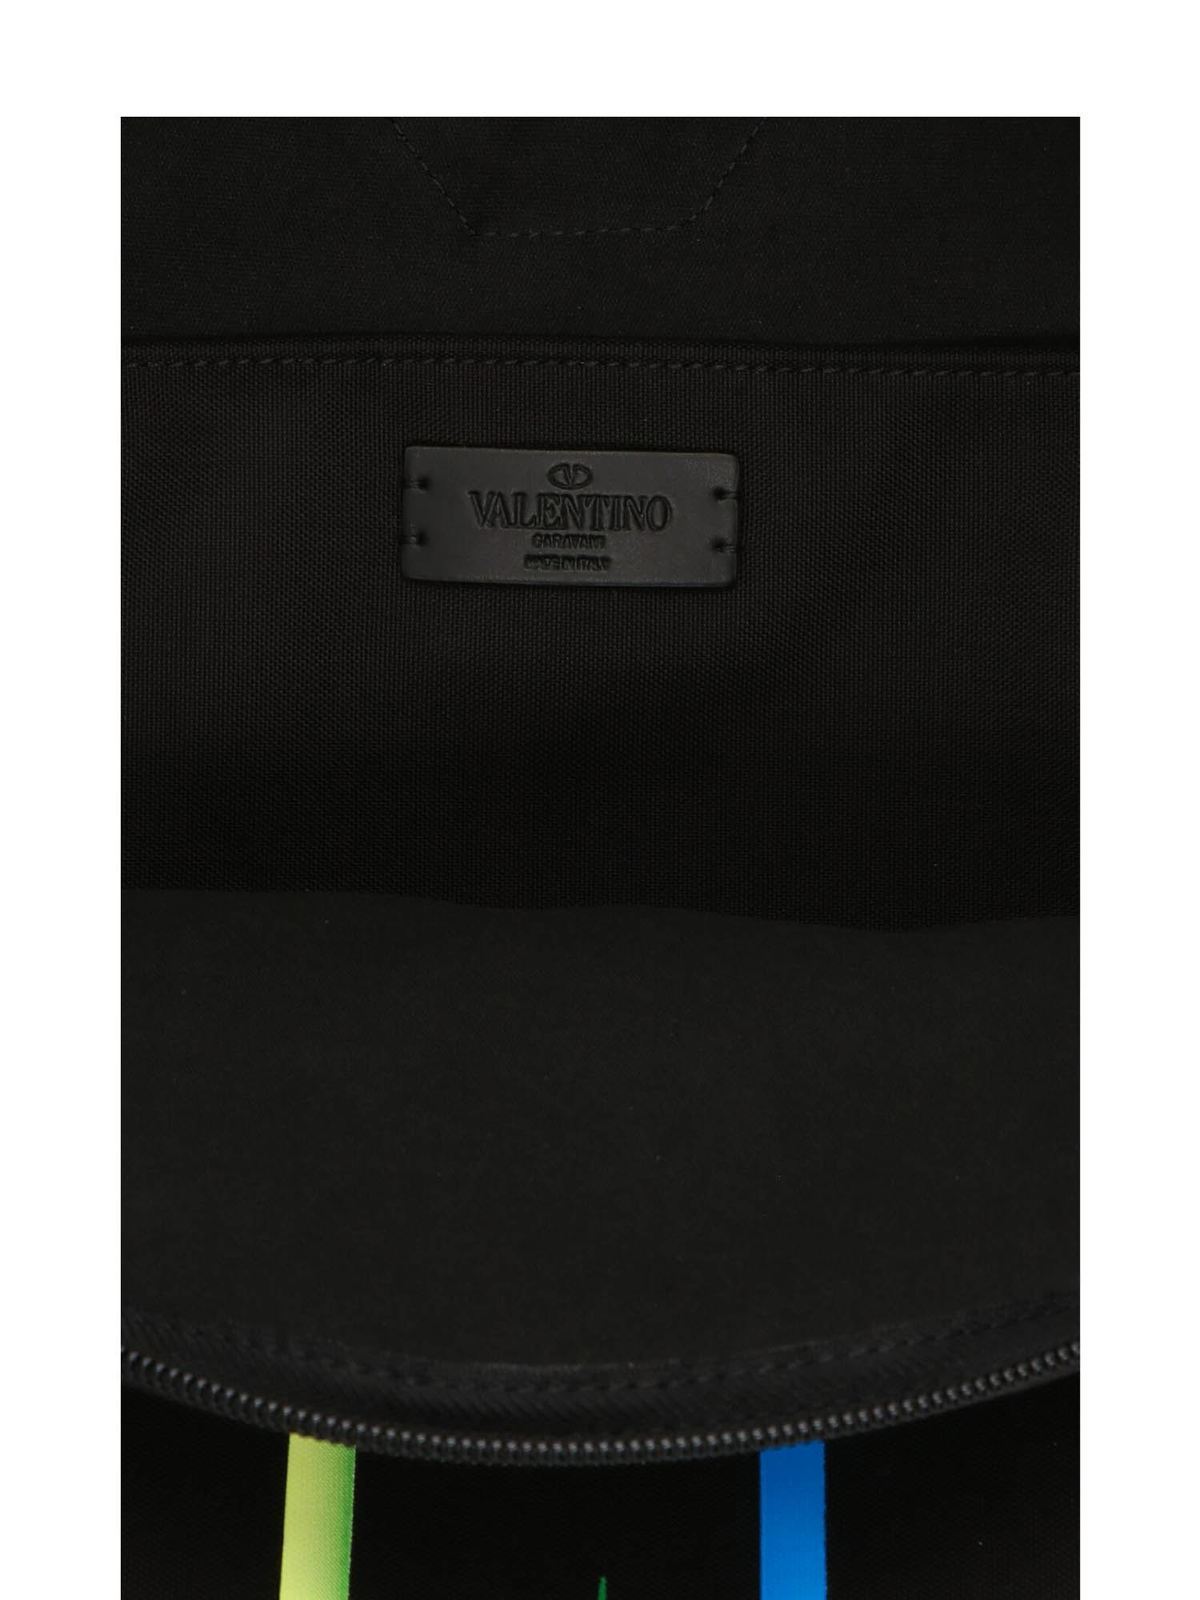 VLTN backpack in black